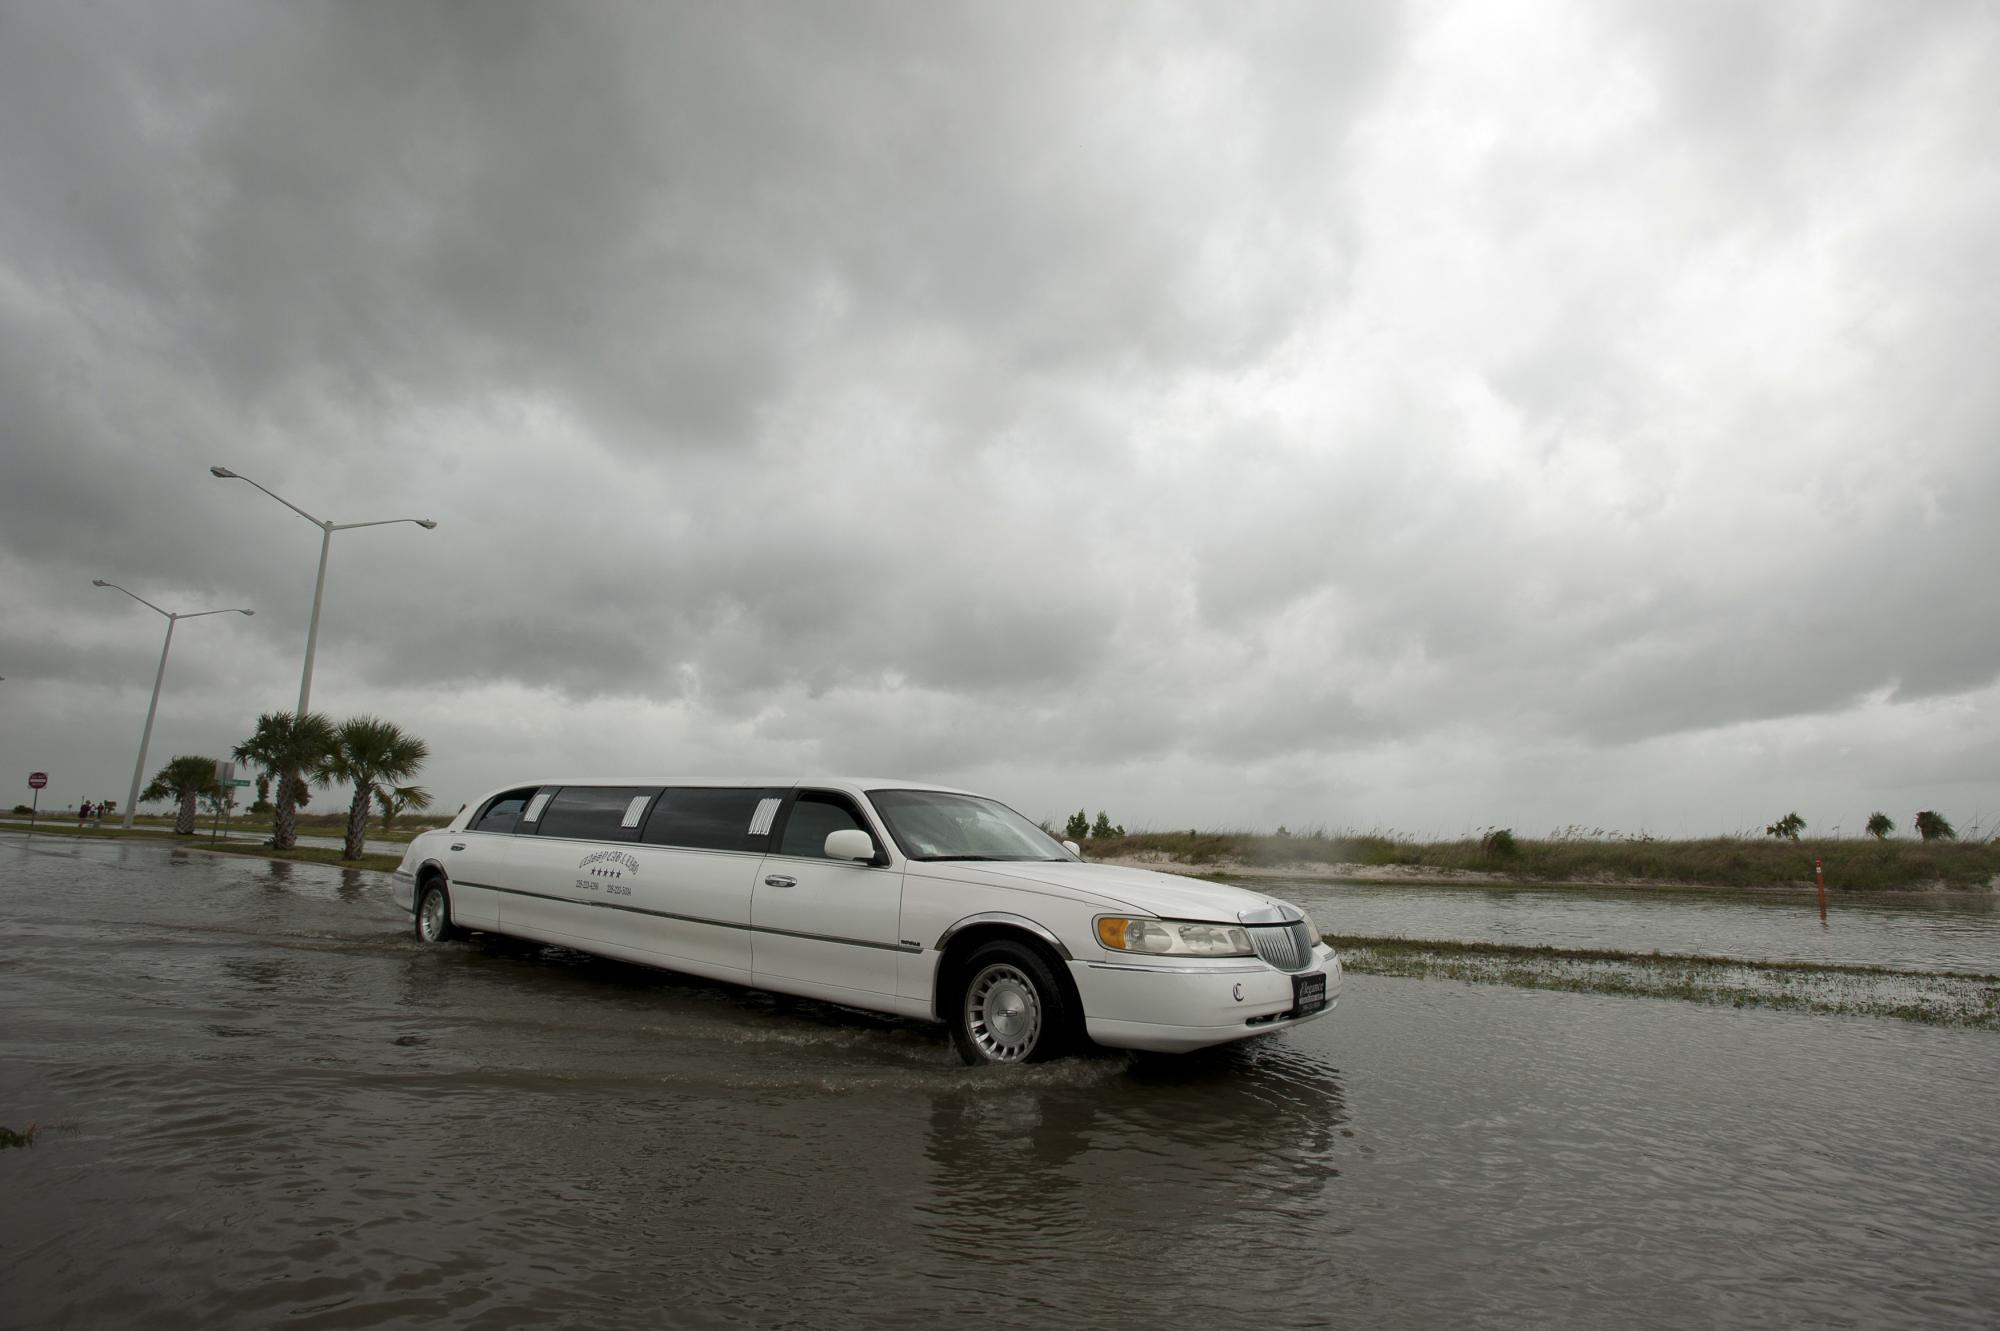 “艾萨克”增强为一级飓风登美 全球最大防洪系统面临大考